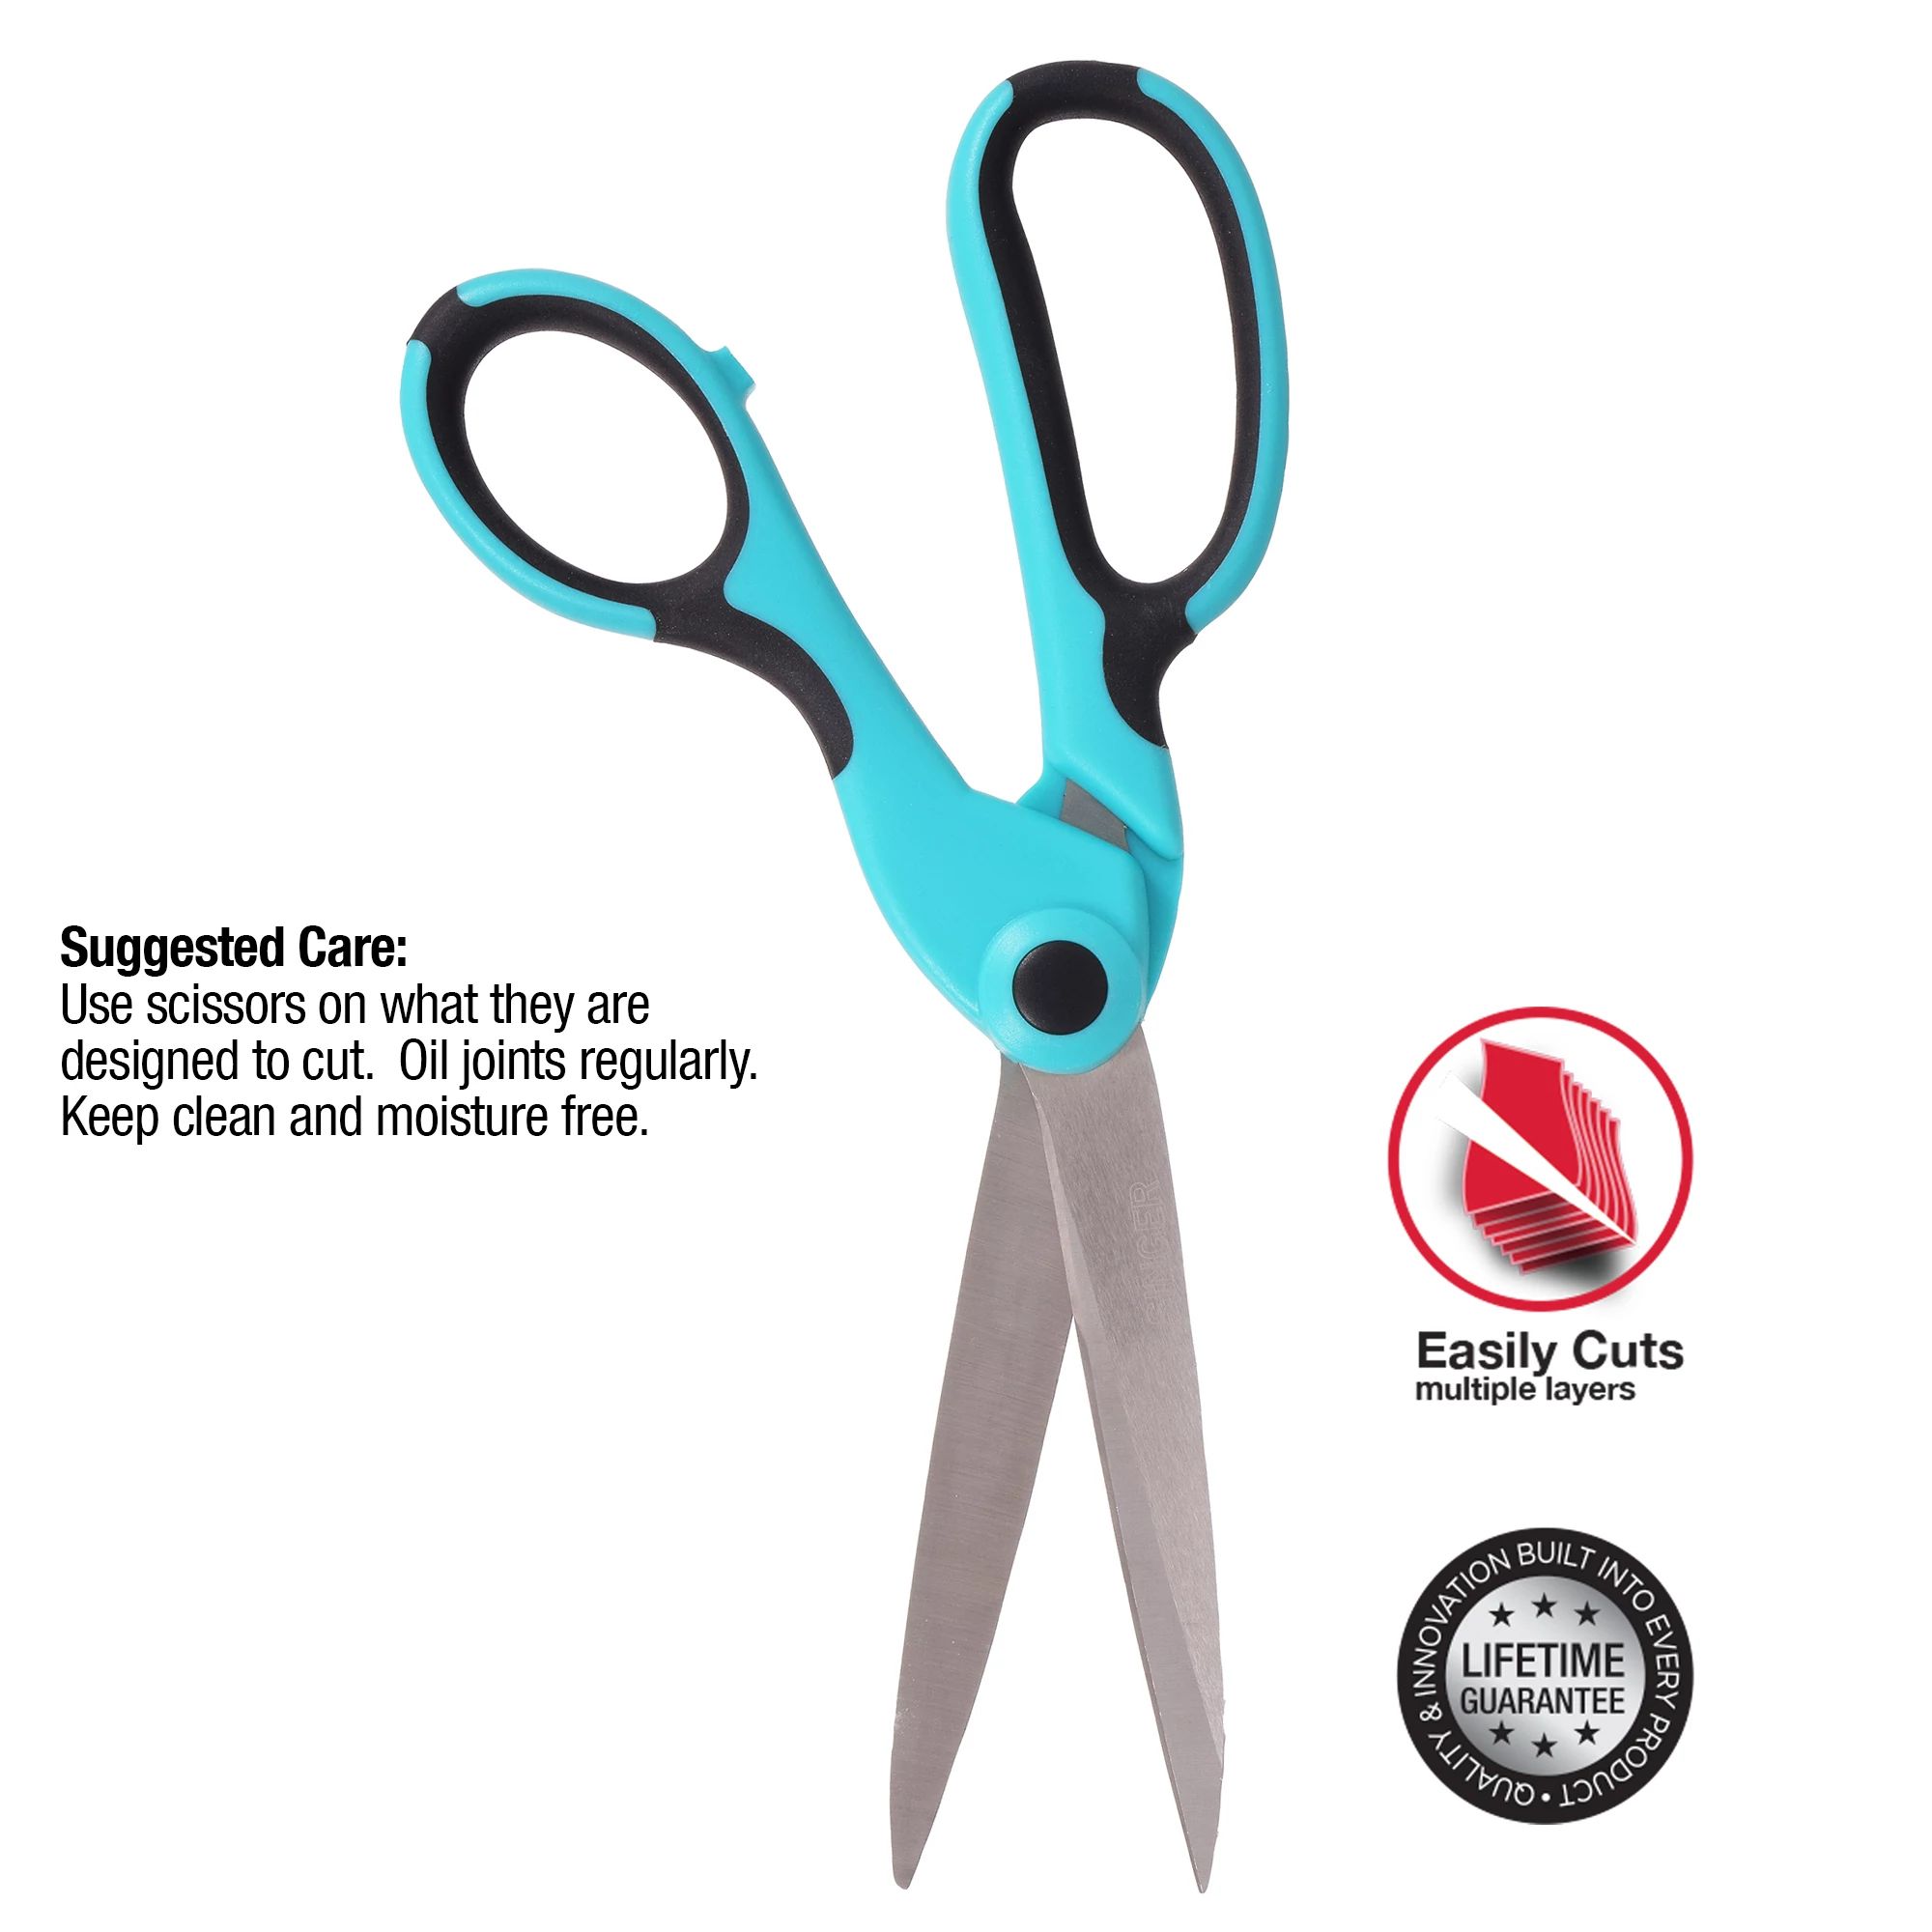 SINGER 9.5" ProSeries™ Heavy-Duty Bent Scissors with Comfort Grip